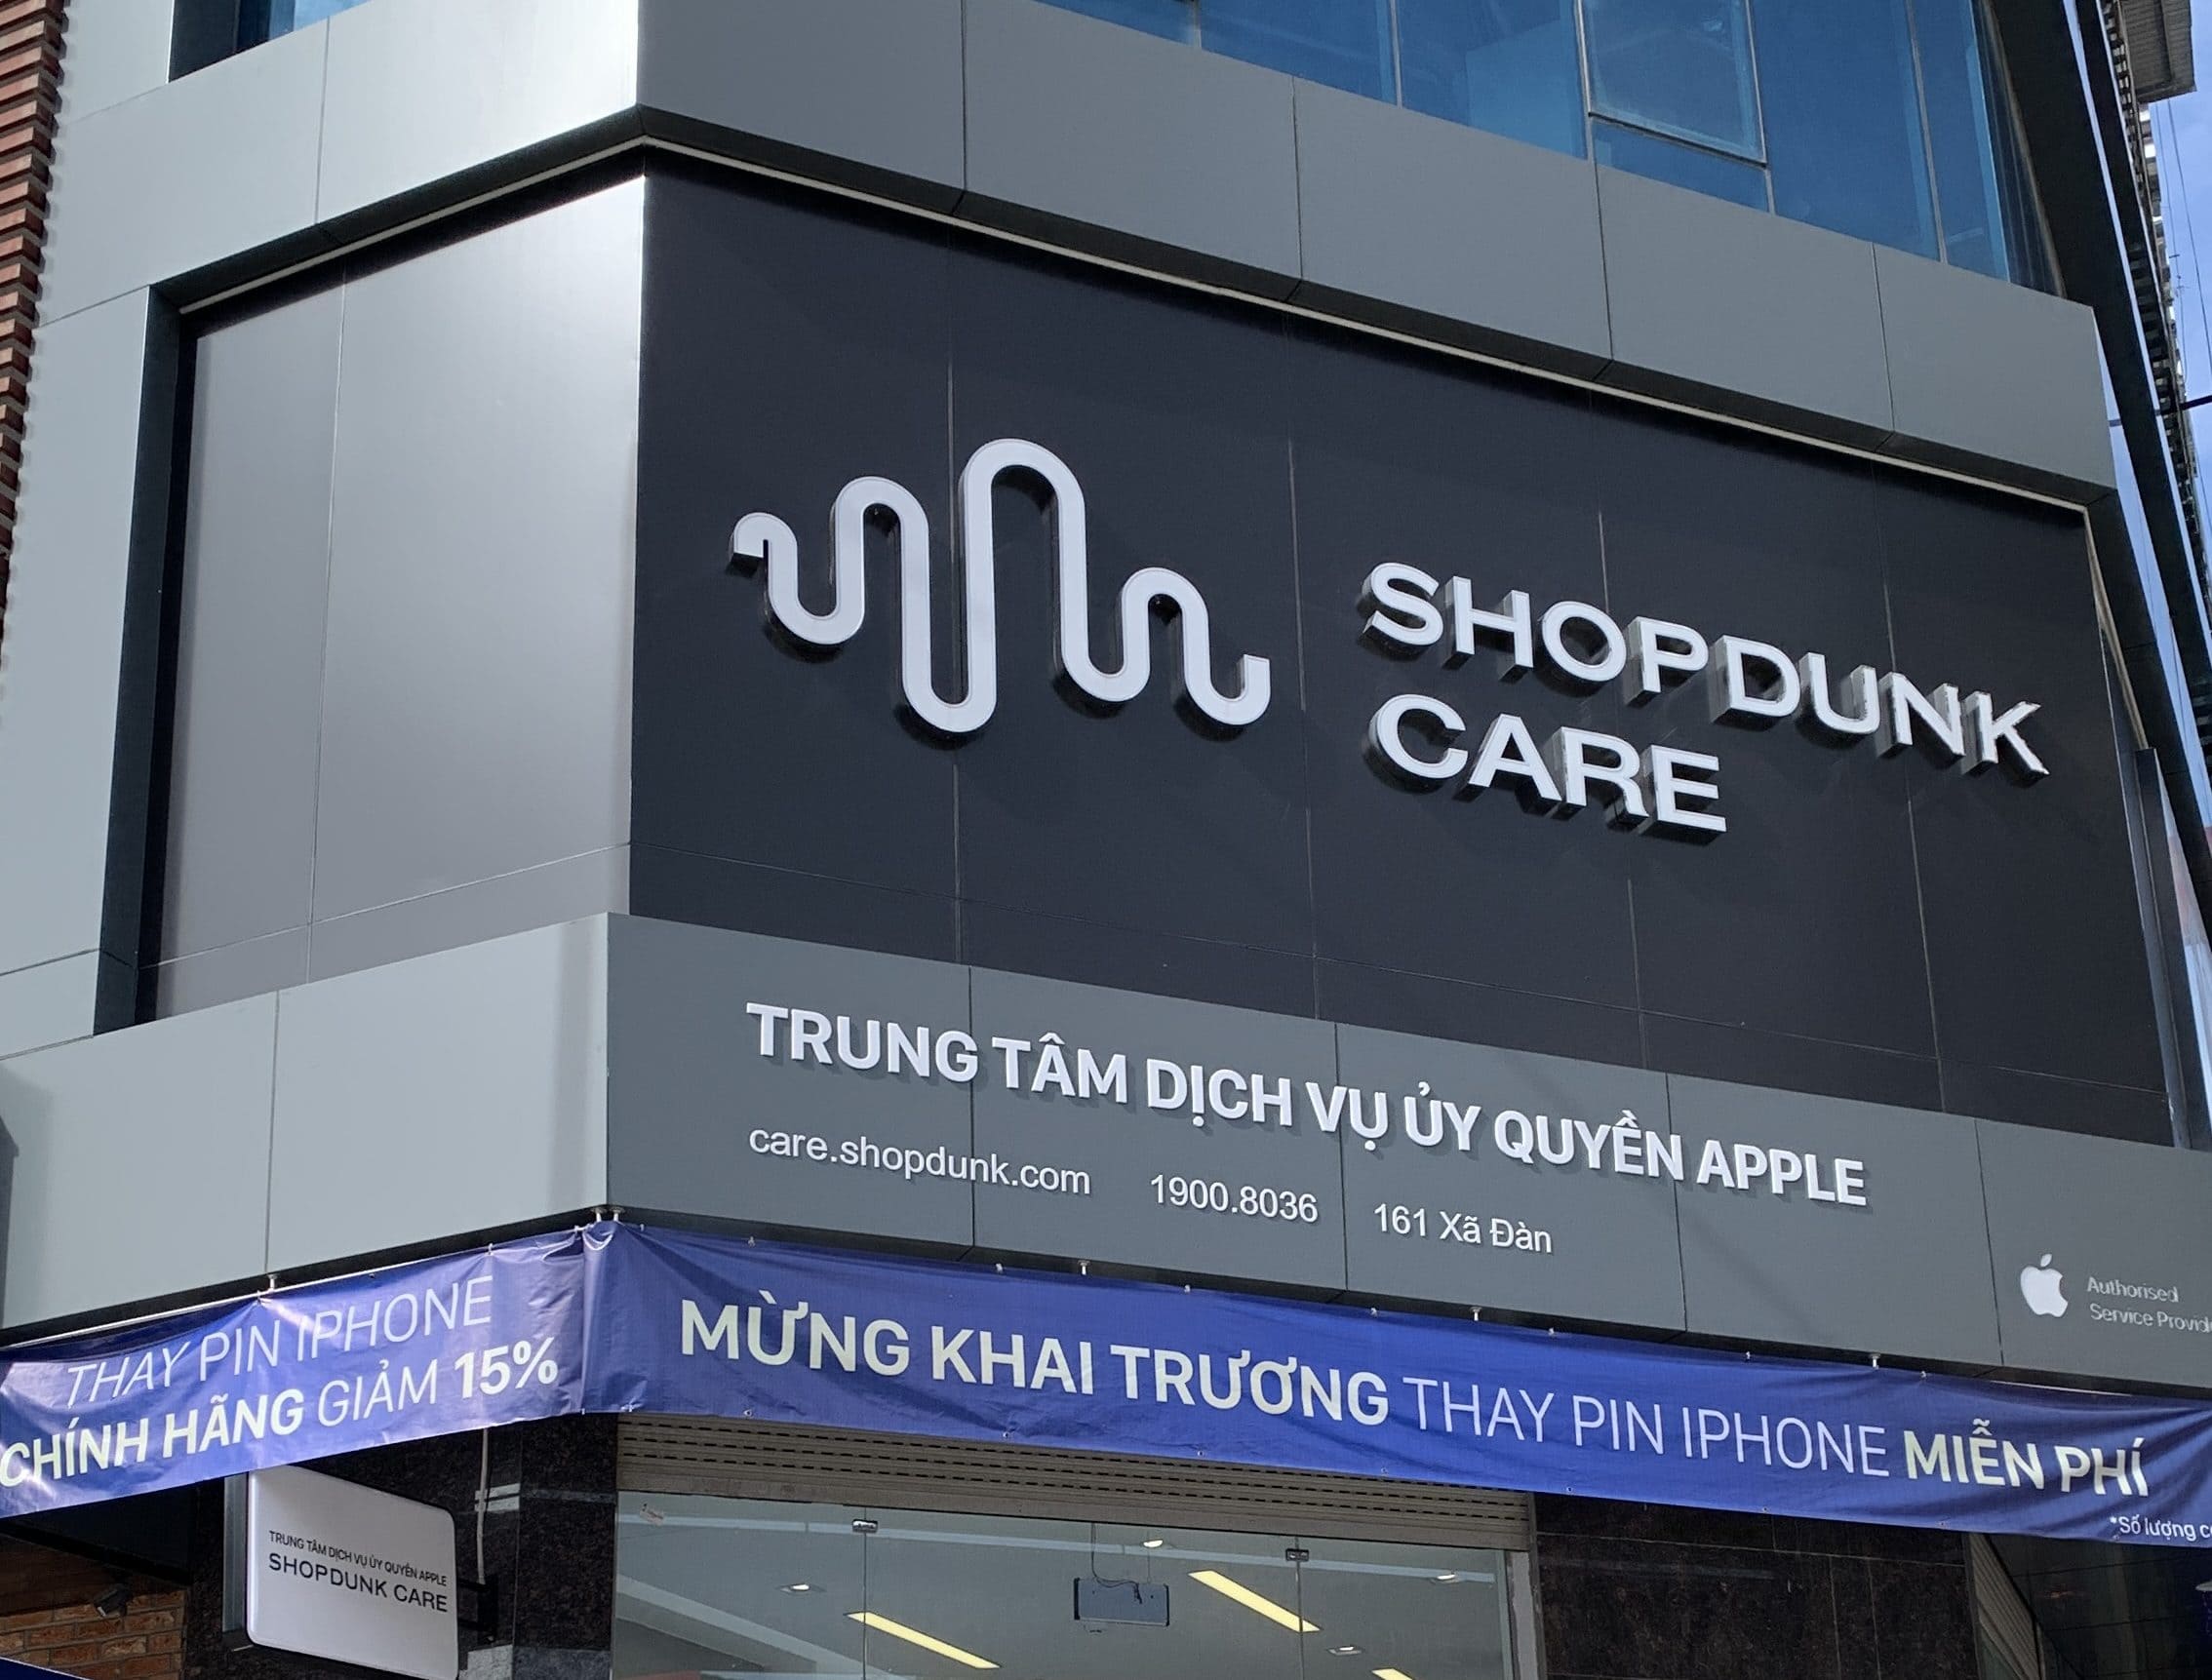 Trung tâm ShopDunk Care